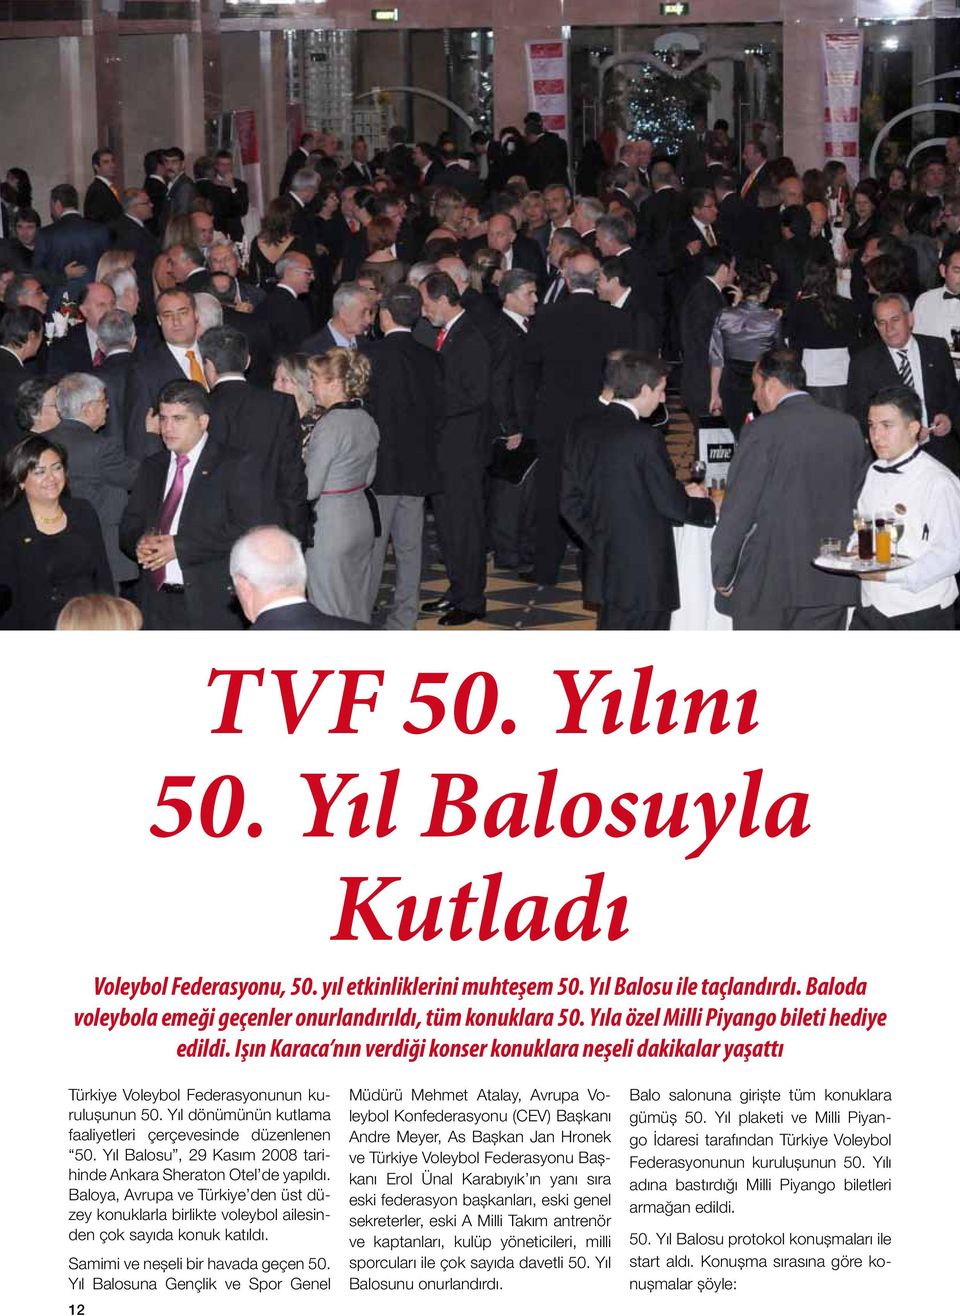 Yıl dönümünün kutlama faaliyetleri çerçevesinde düzenlenen 50. Yıl Balosu, 29 Kasım 2008 tarihinde Ankara Sheraton Otel de yapıldı.